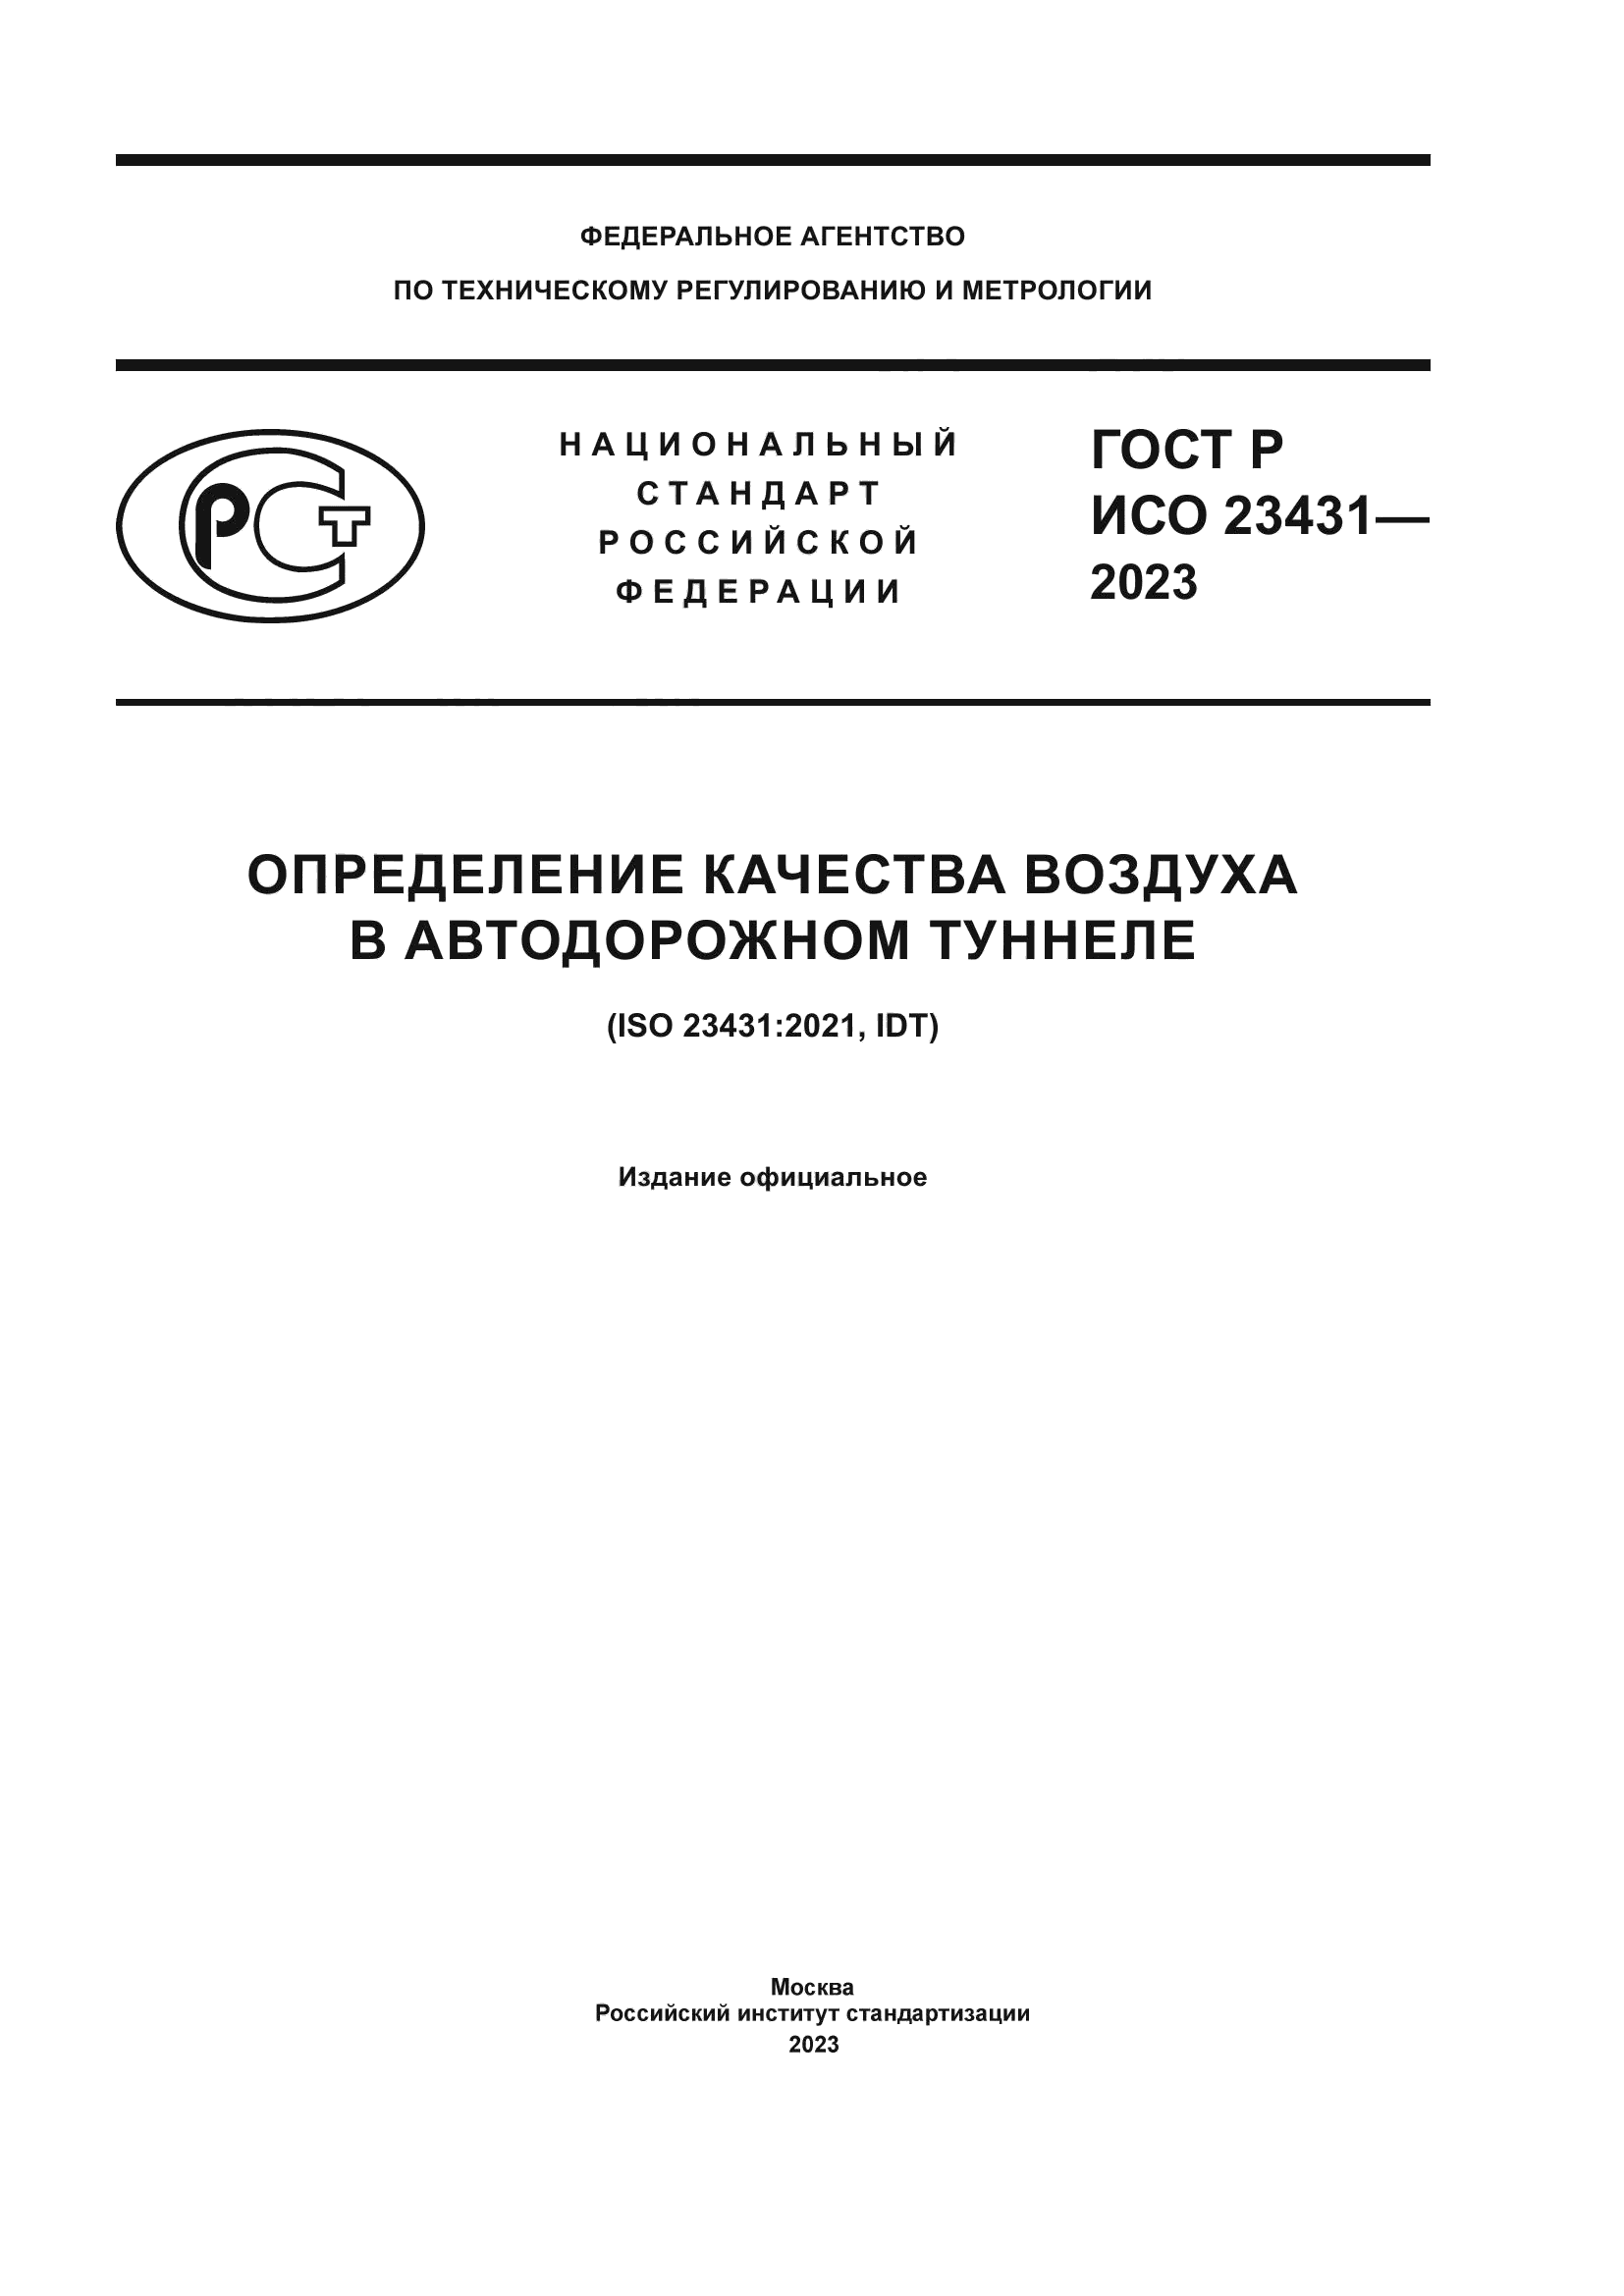 ГОСТ Р ИСО 23431-2023